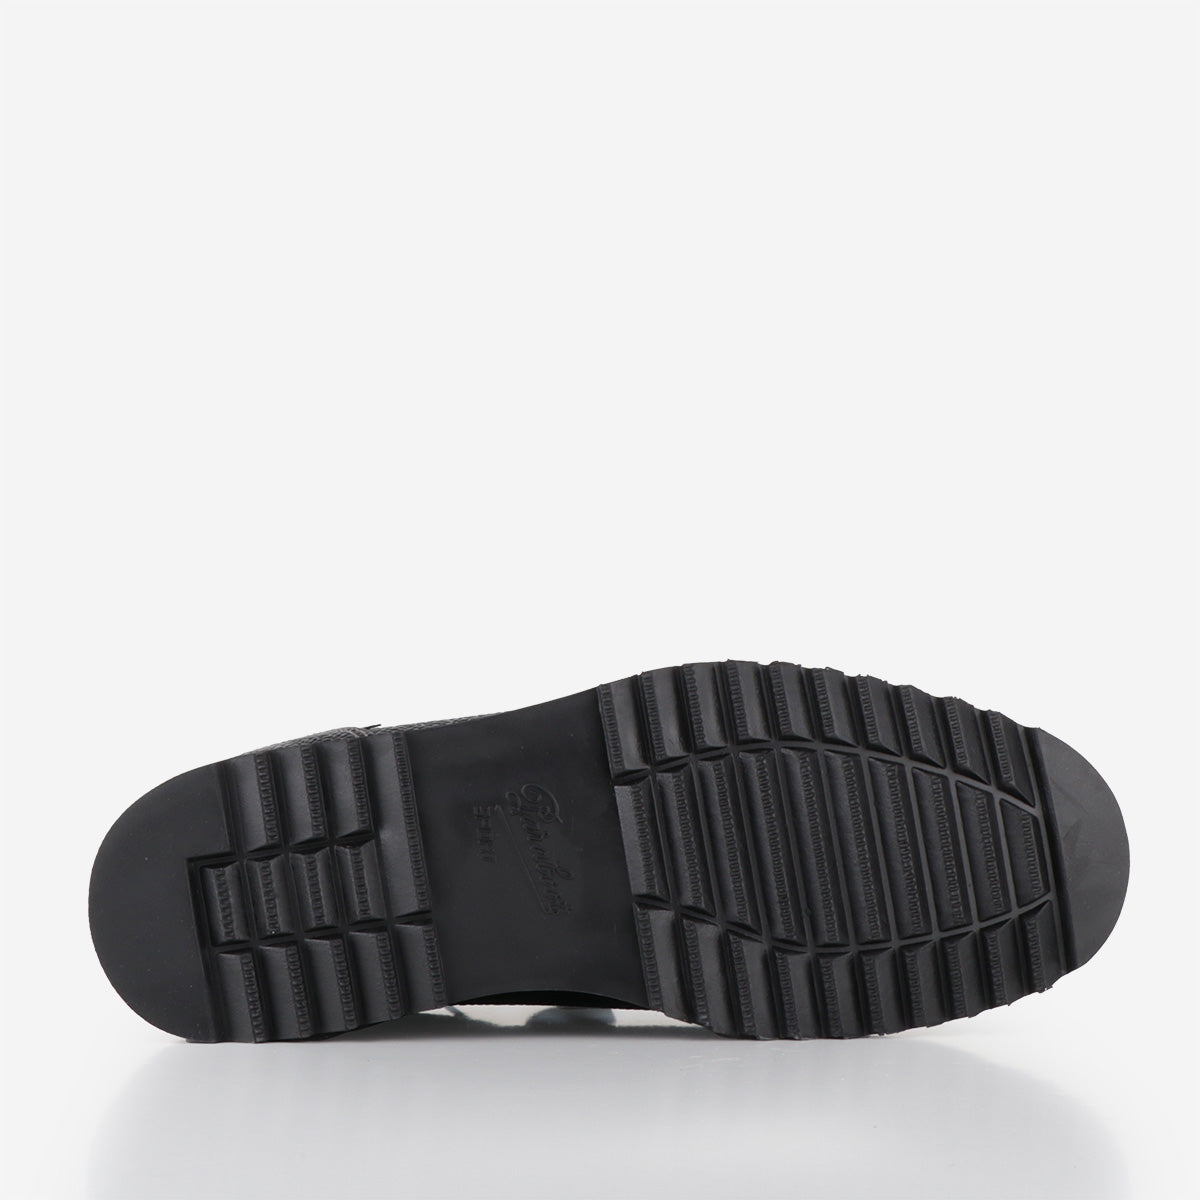 Paraboot Sierra Graine Shoes, Black, Detail Shot 4